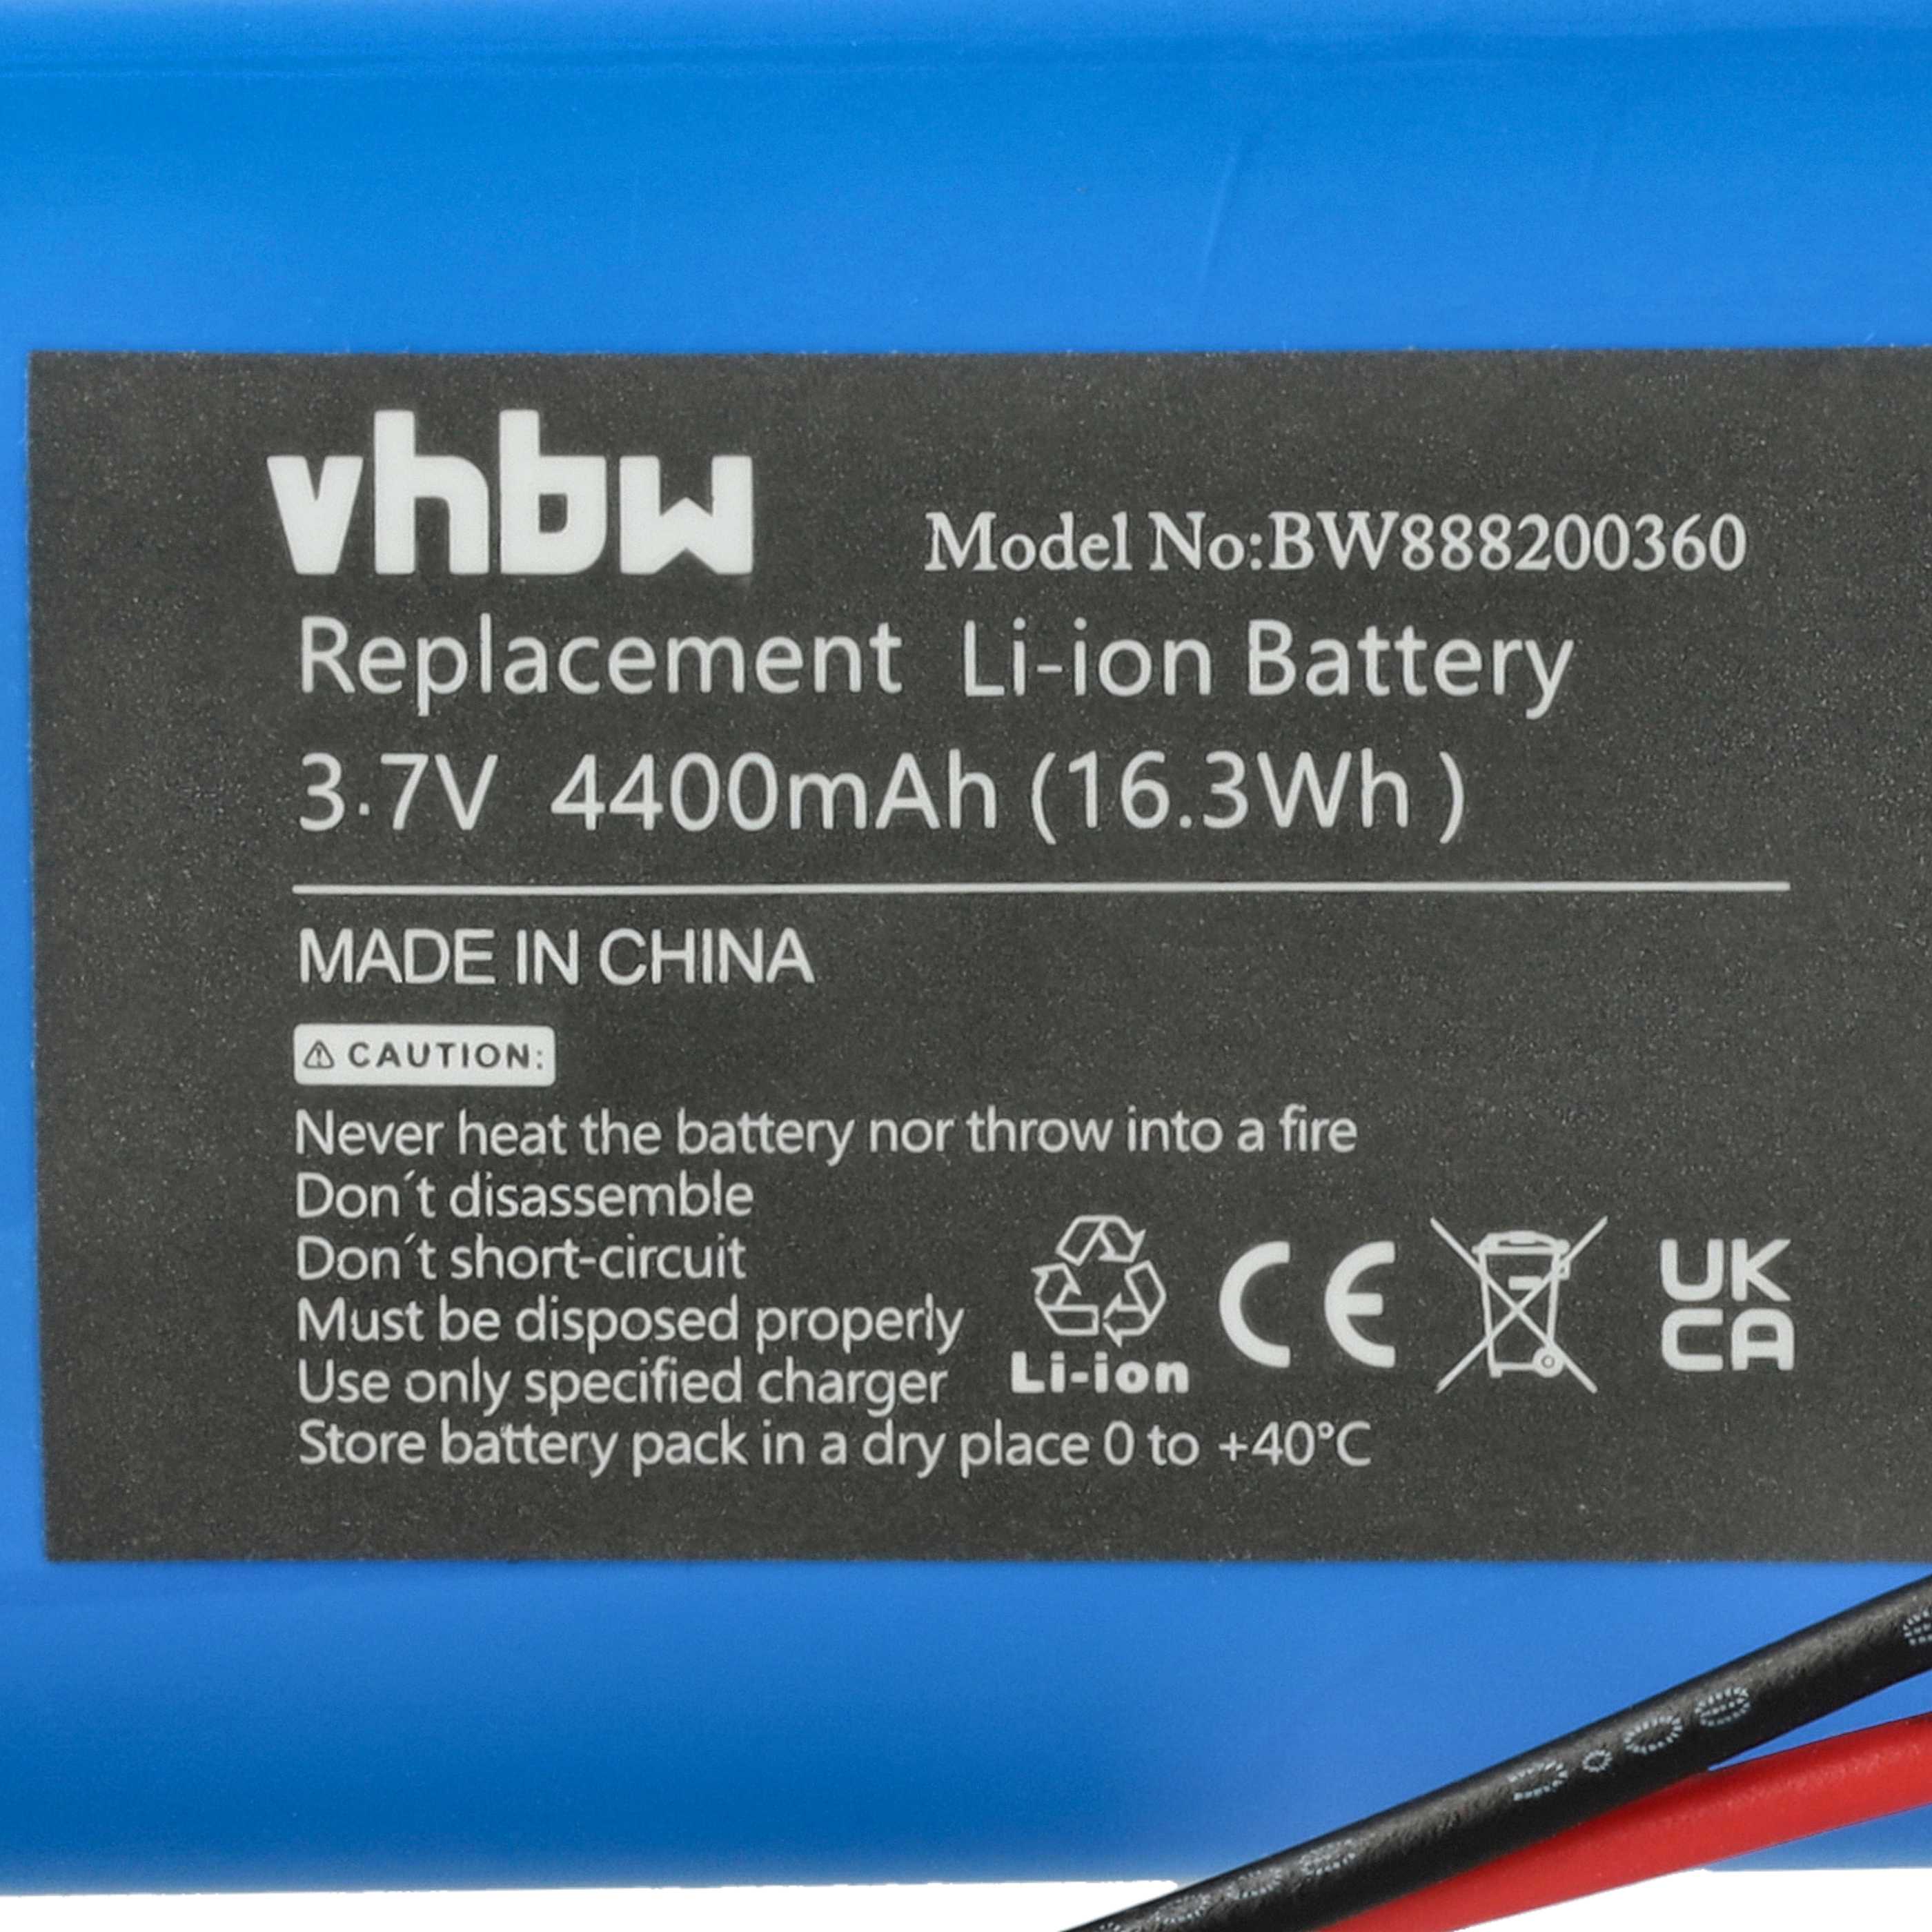 Batteries (5x pièces) remplace Sigor 4508401 pour lampe sans fil - 4400mAh 3,7V Li-ion